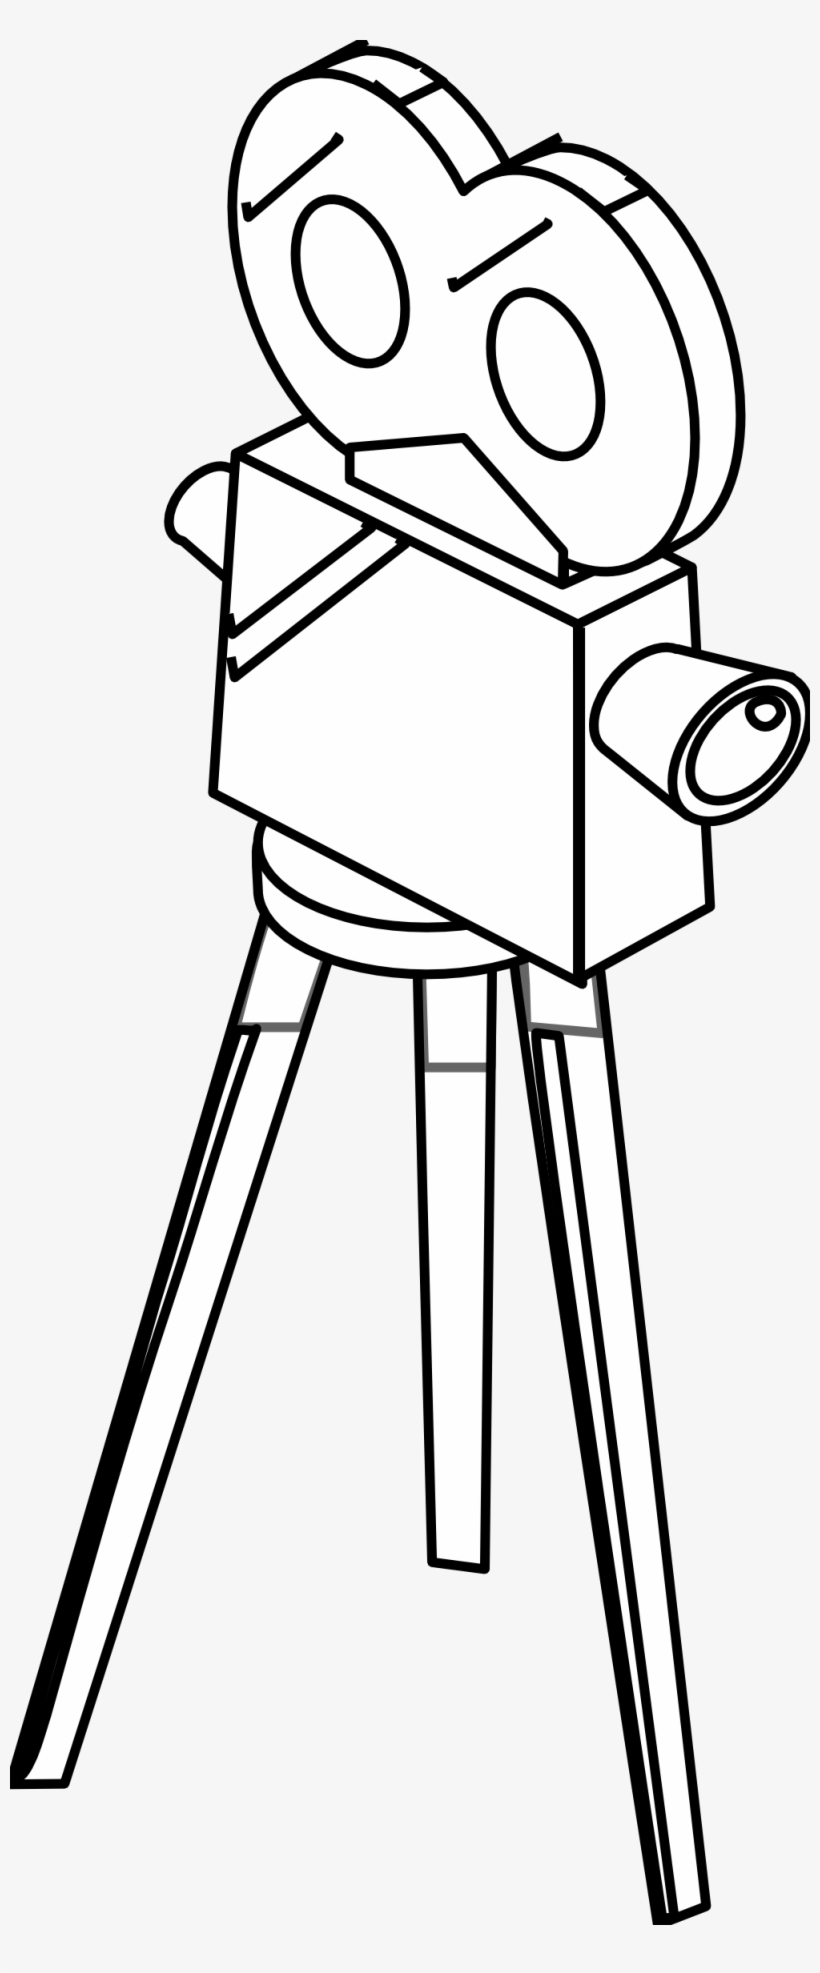 Drawing Video Camera 9 - Camara De Video Para Dibujar, transparent png #966049